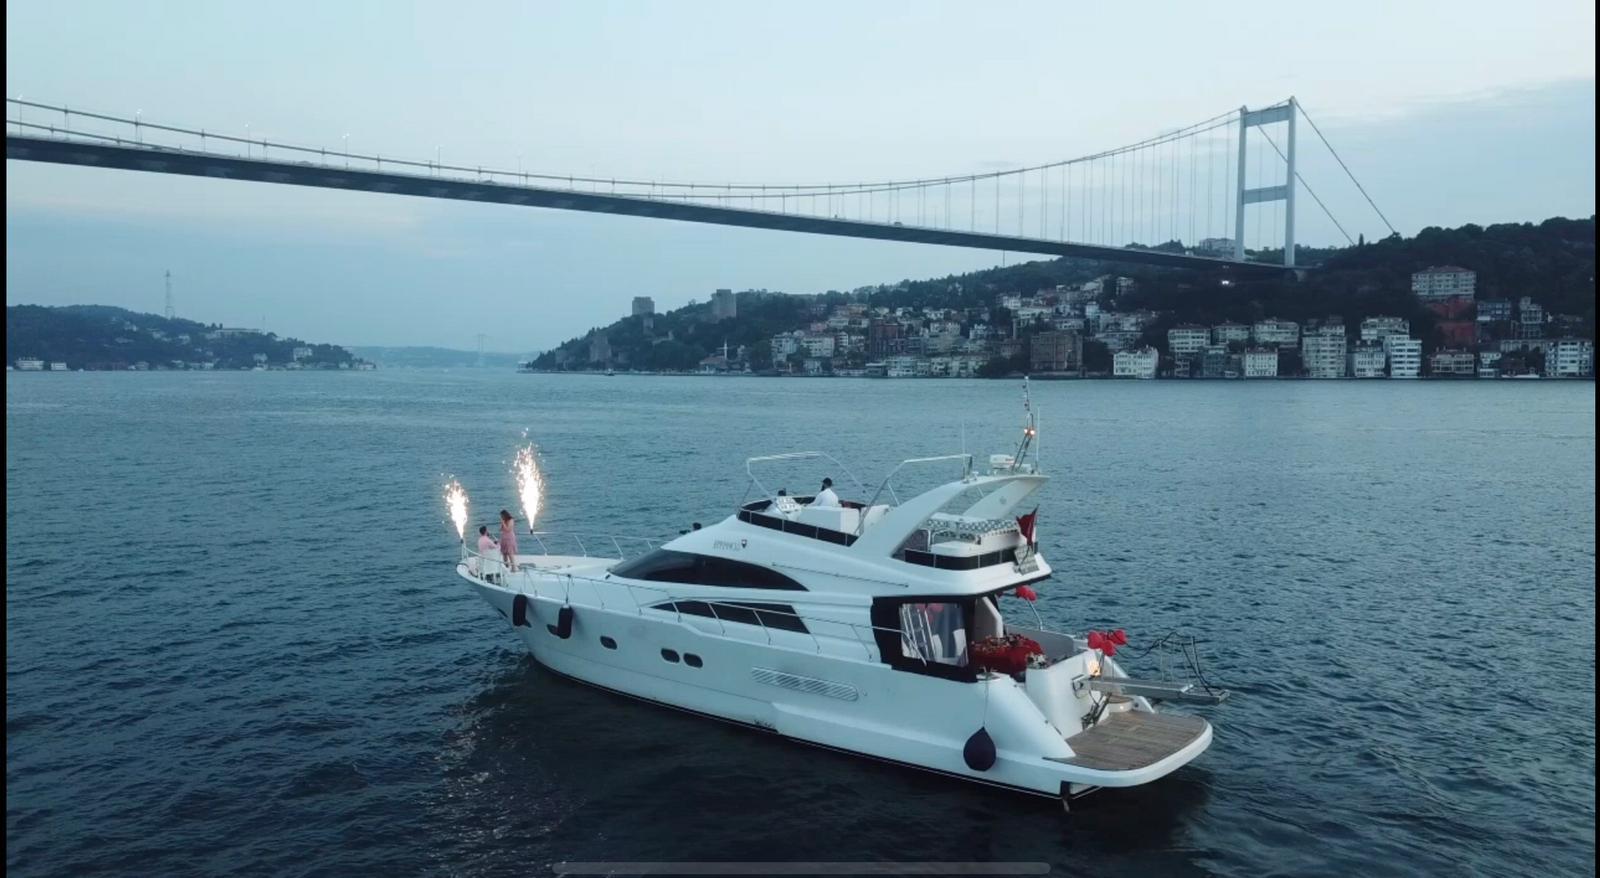 Аренда яхты в Стамбуле